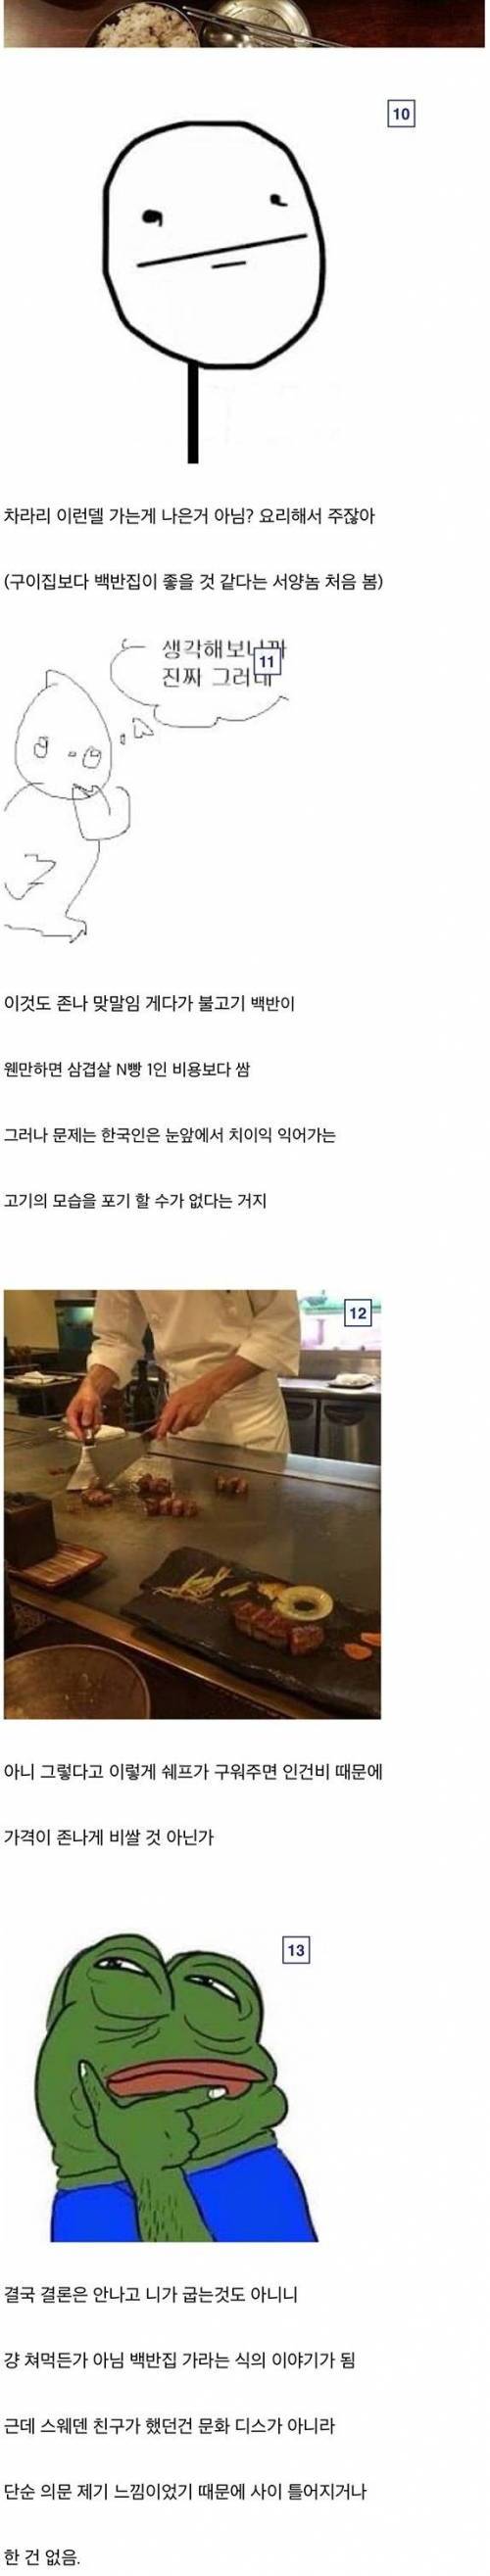 한국 고기구이 식당 문화가 이상했던 서양친구